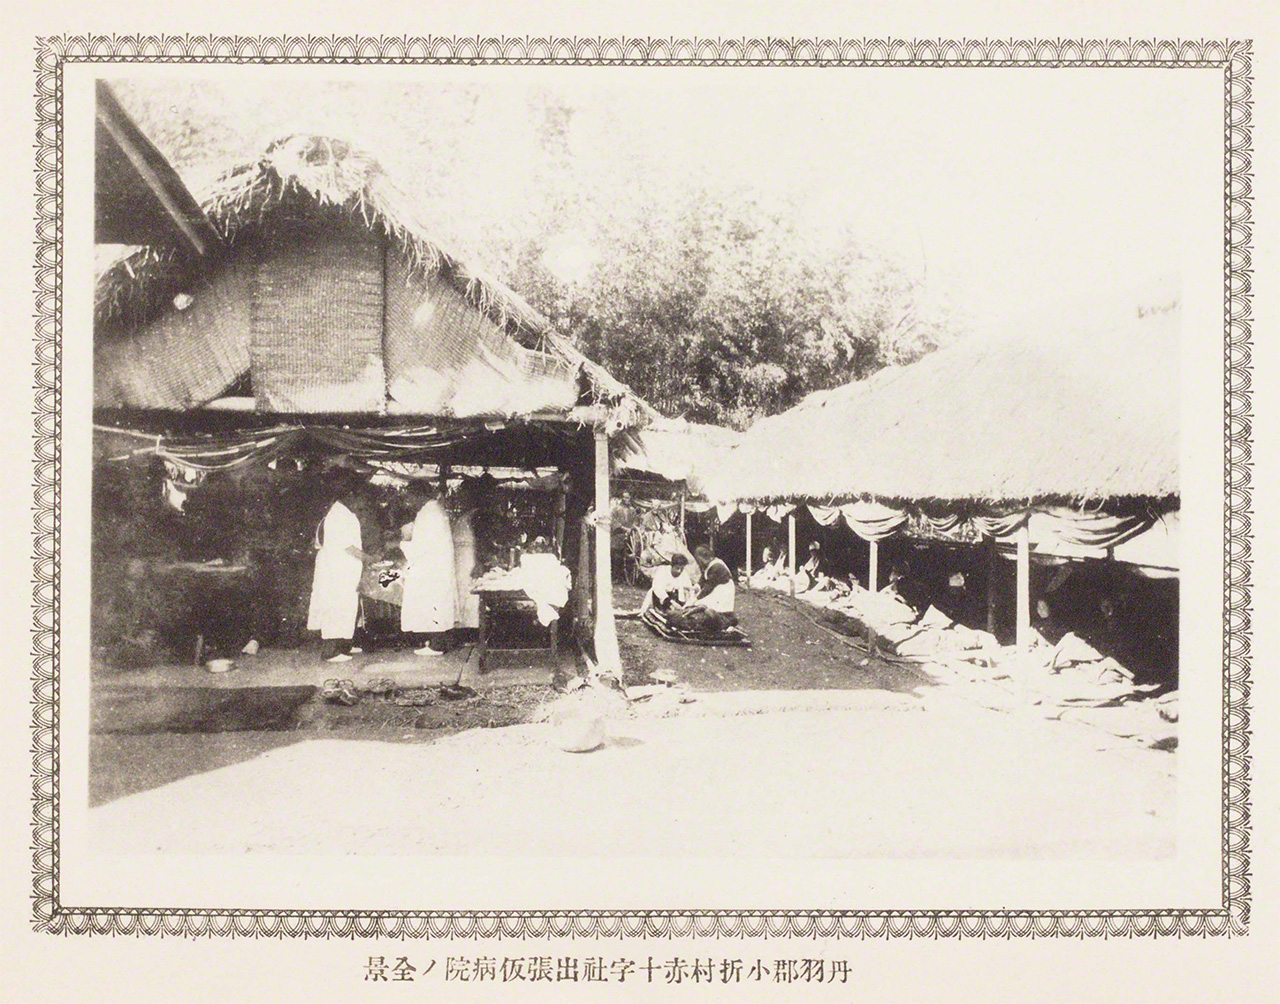 1891年に起きた濃尾震災における日本赤十字社の救護活動を記録した写真